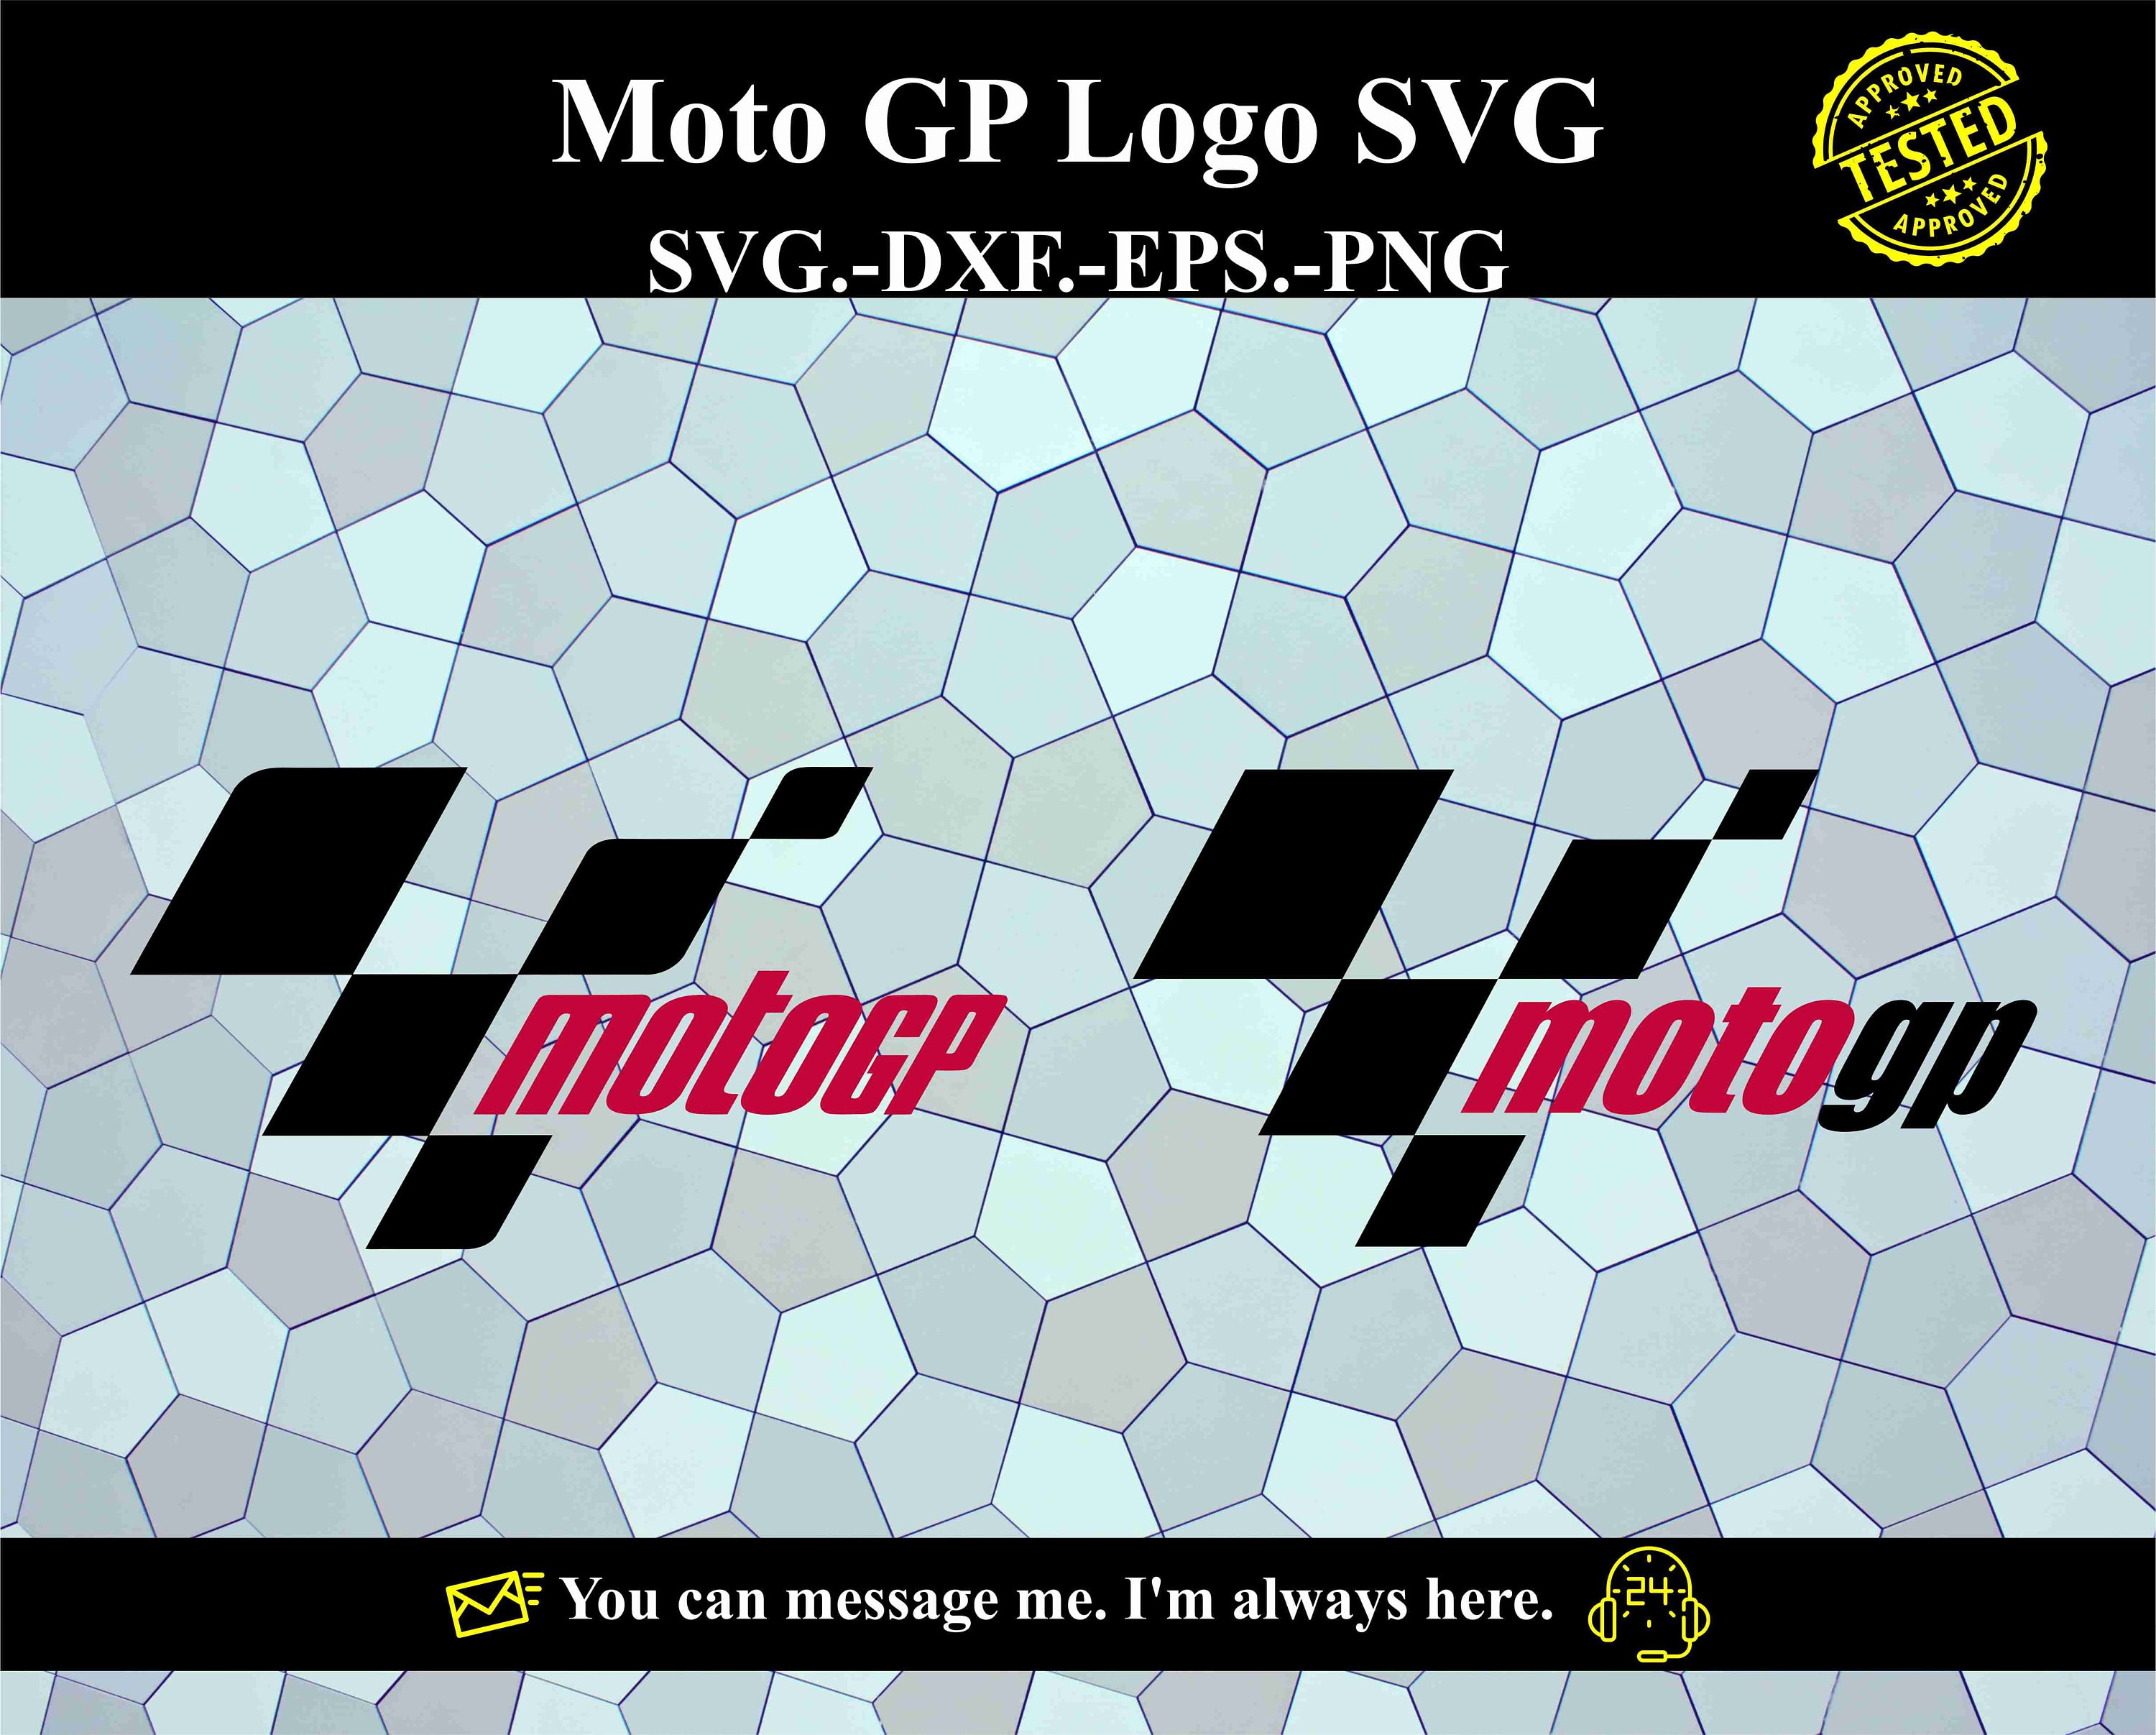 motogp logo png